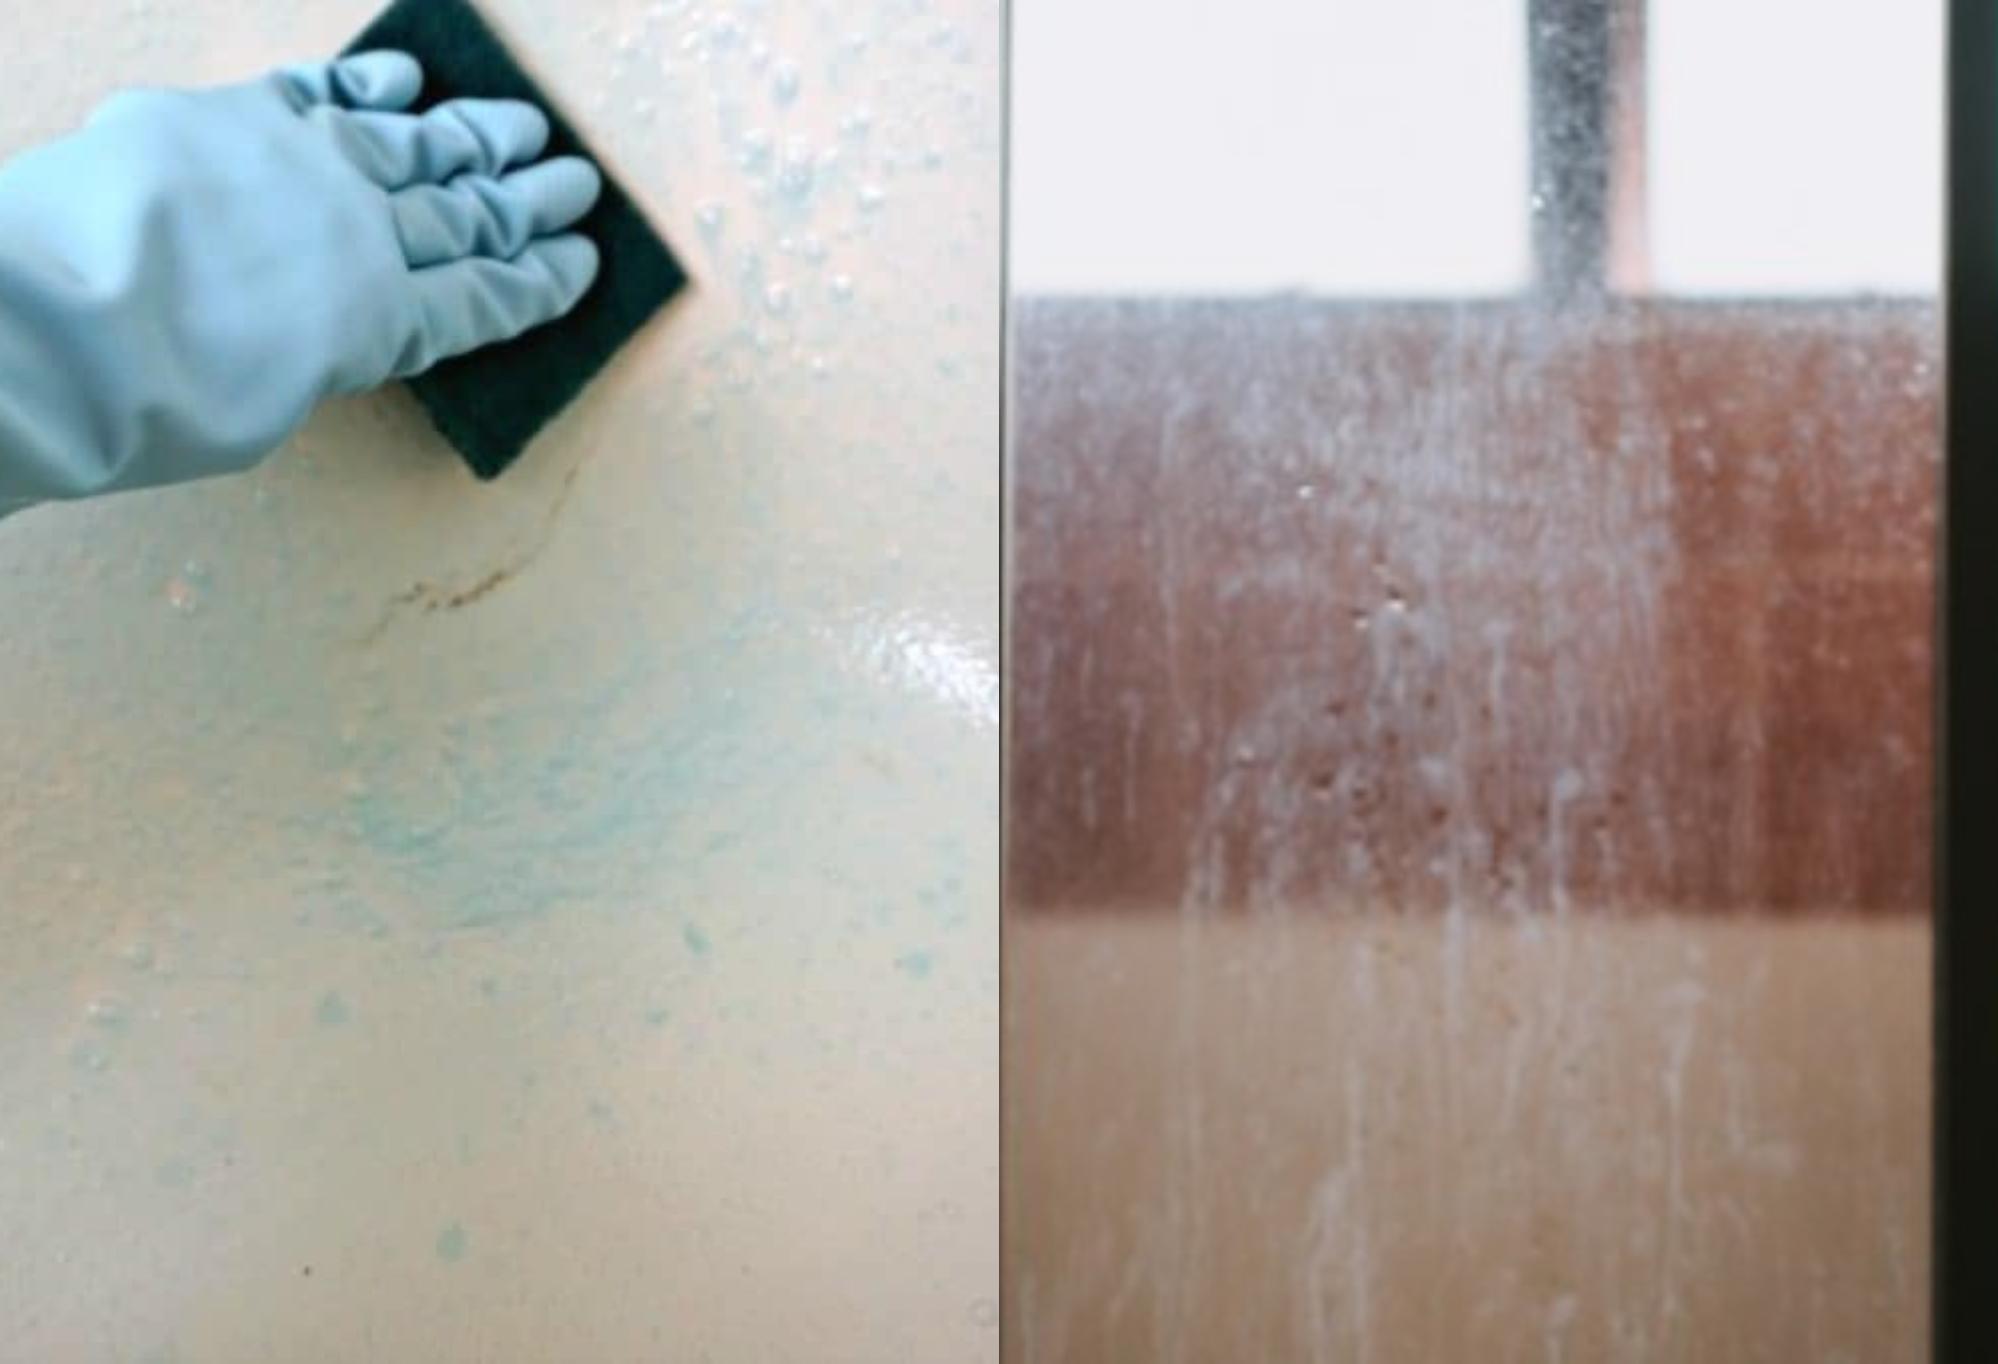 Υπολείμματα σαπουνιού βρωμιά και μικρόβια στην μπανιέρα: Κάνε την να αστράφτει σαν καινούρια με 8 σπιτικές συνταγές